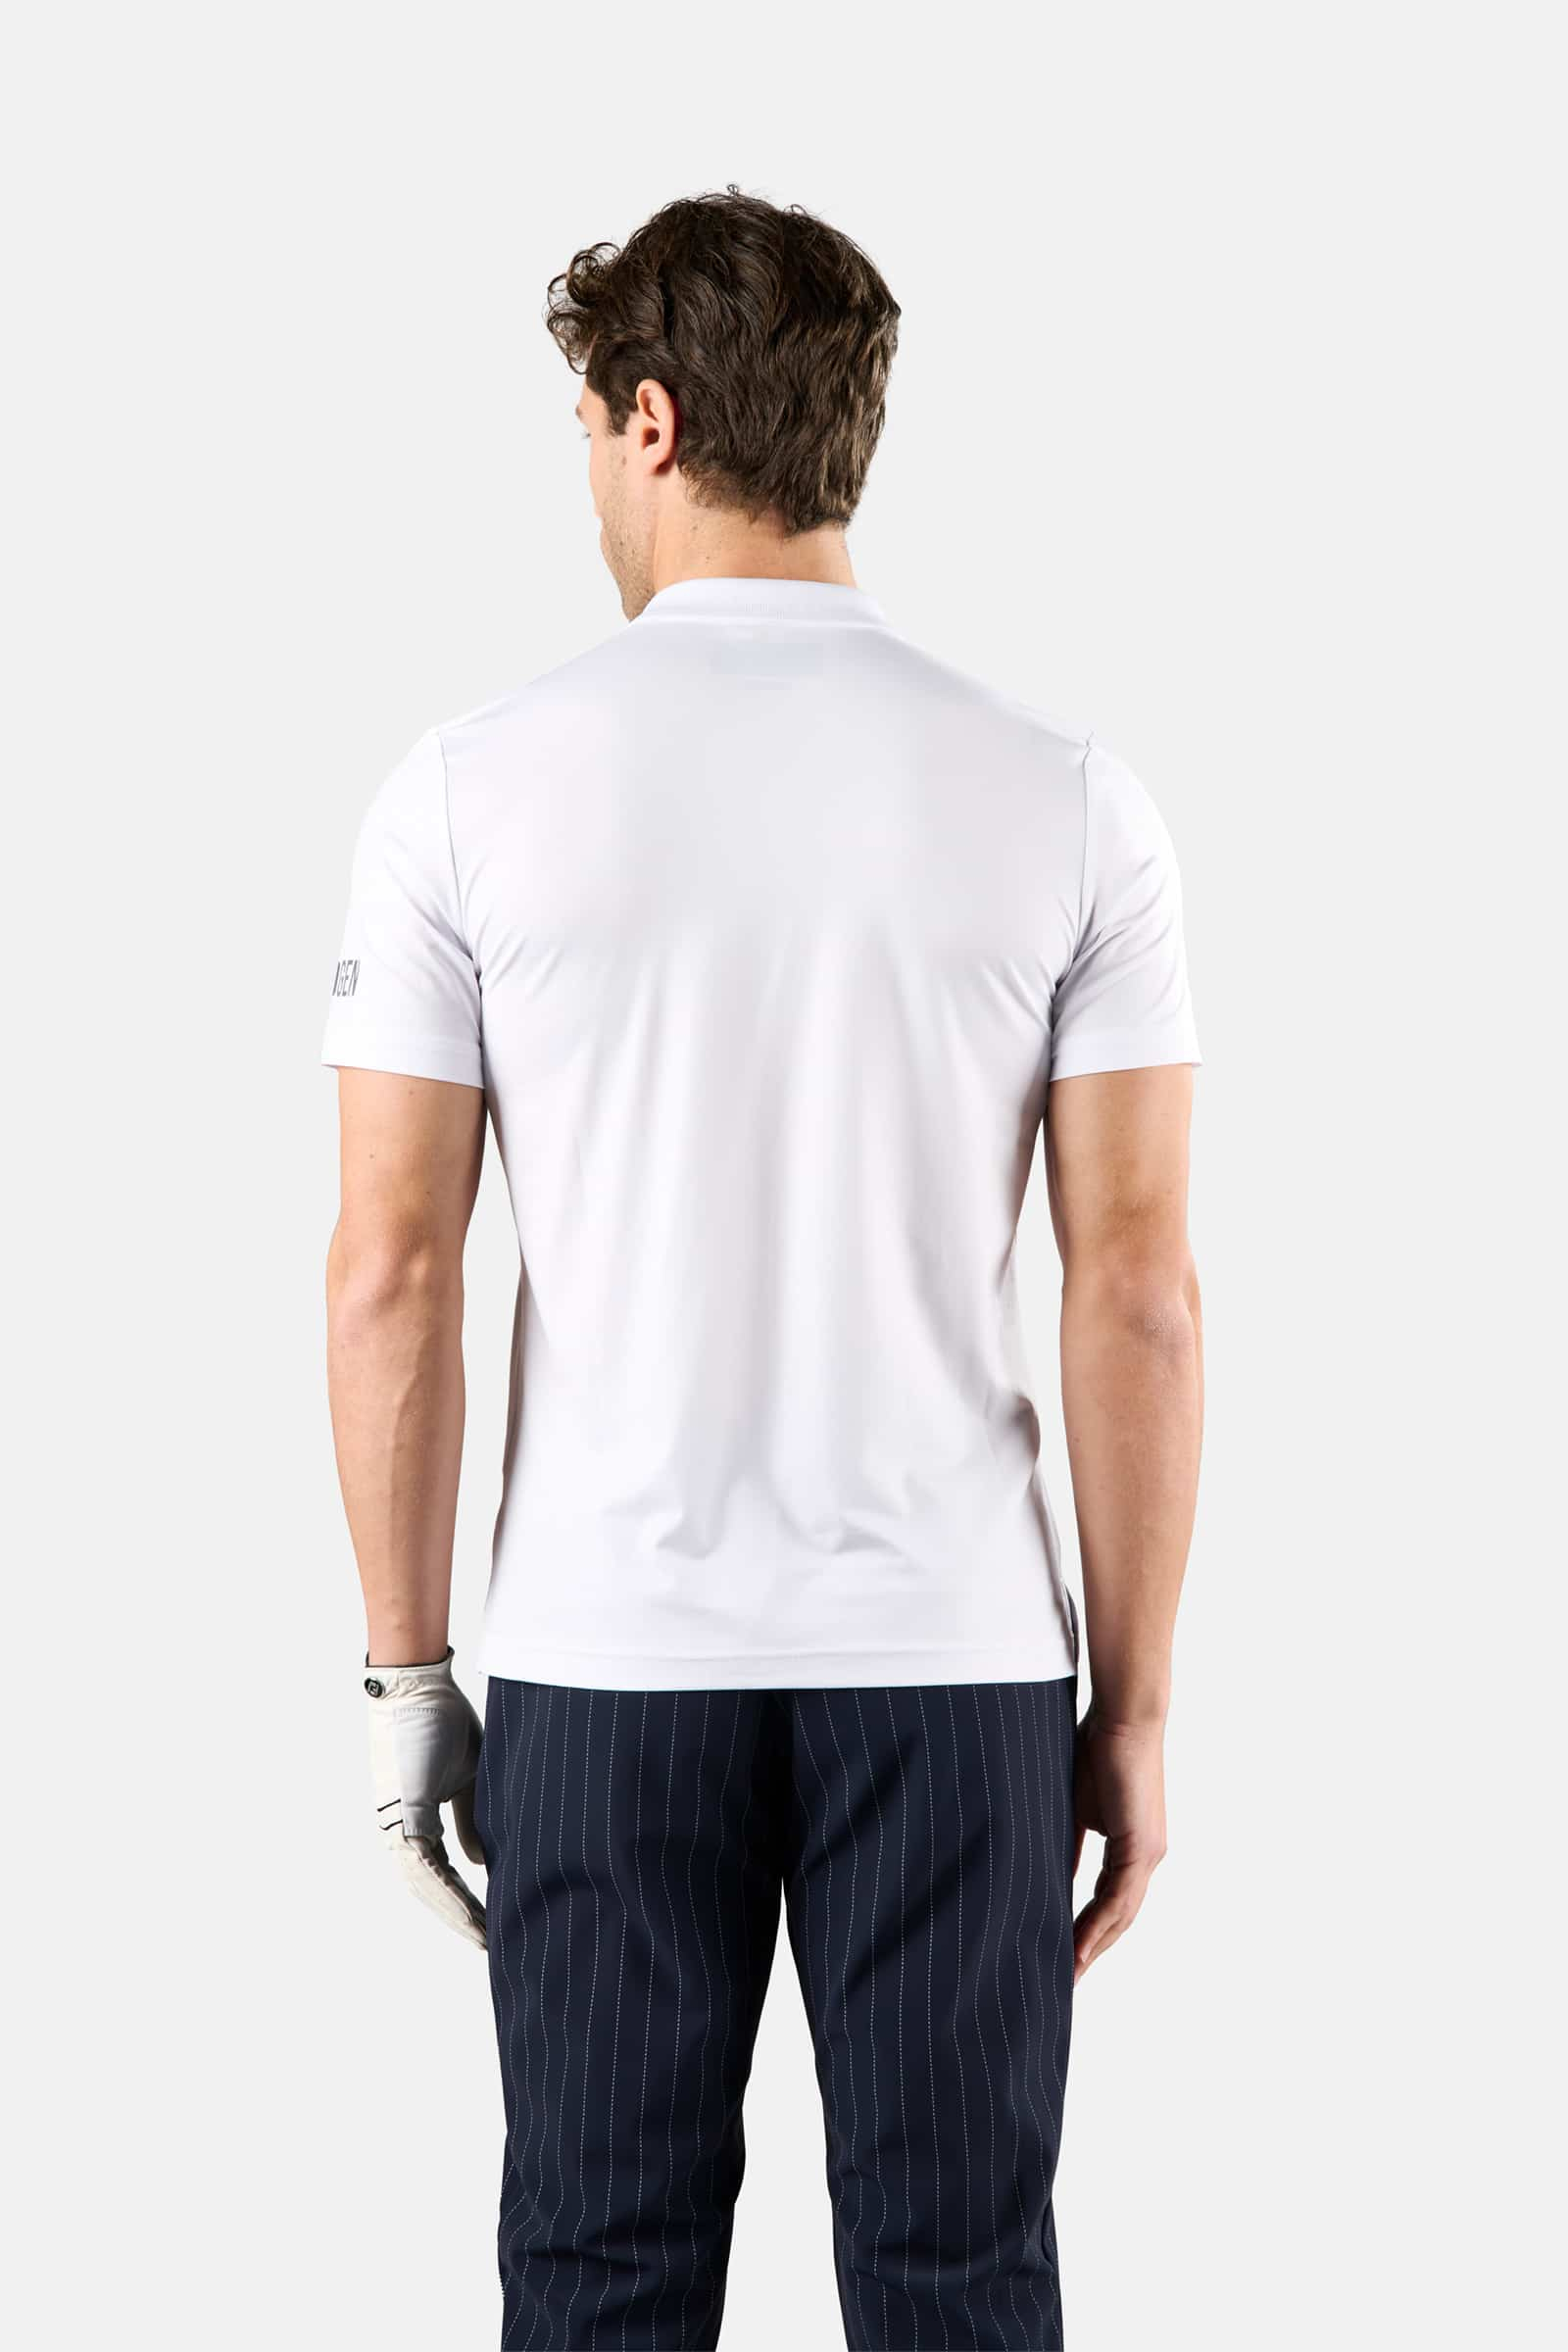 BASIC GOLF POLO - WHITE - Abbigliamento sportivo | Hydrogen